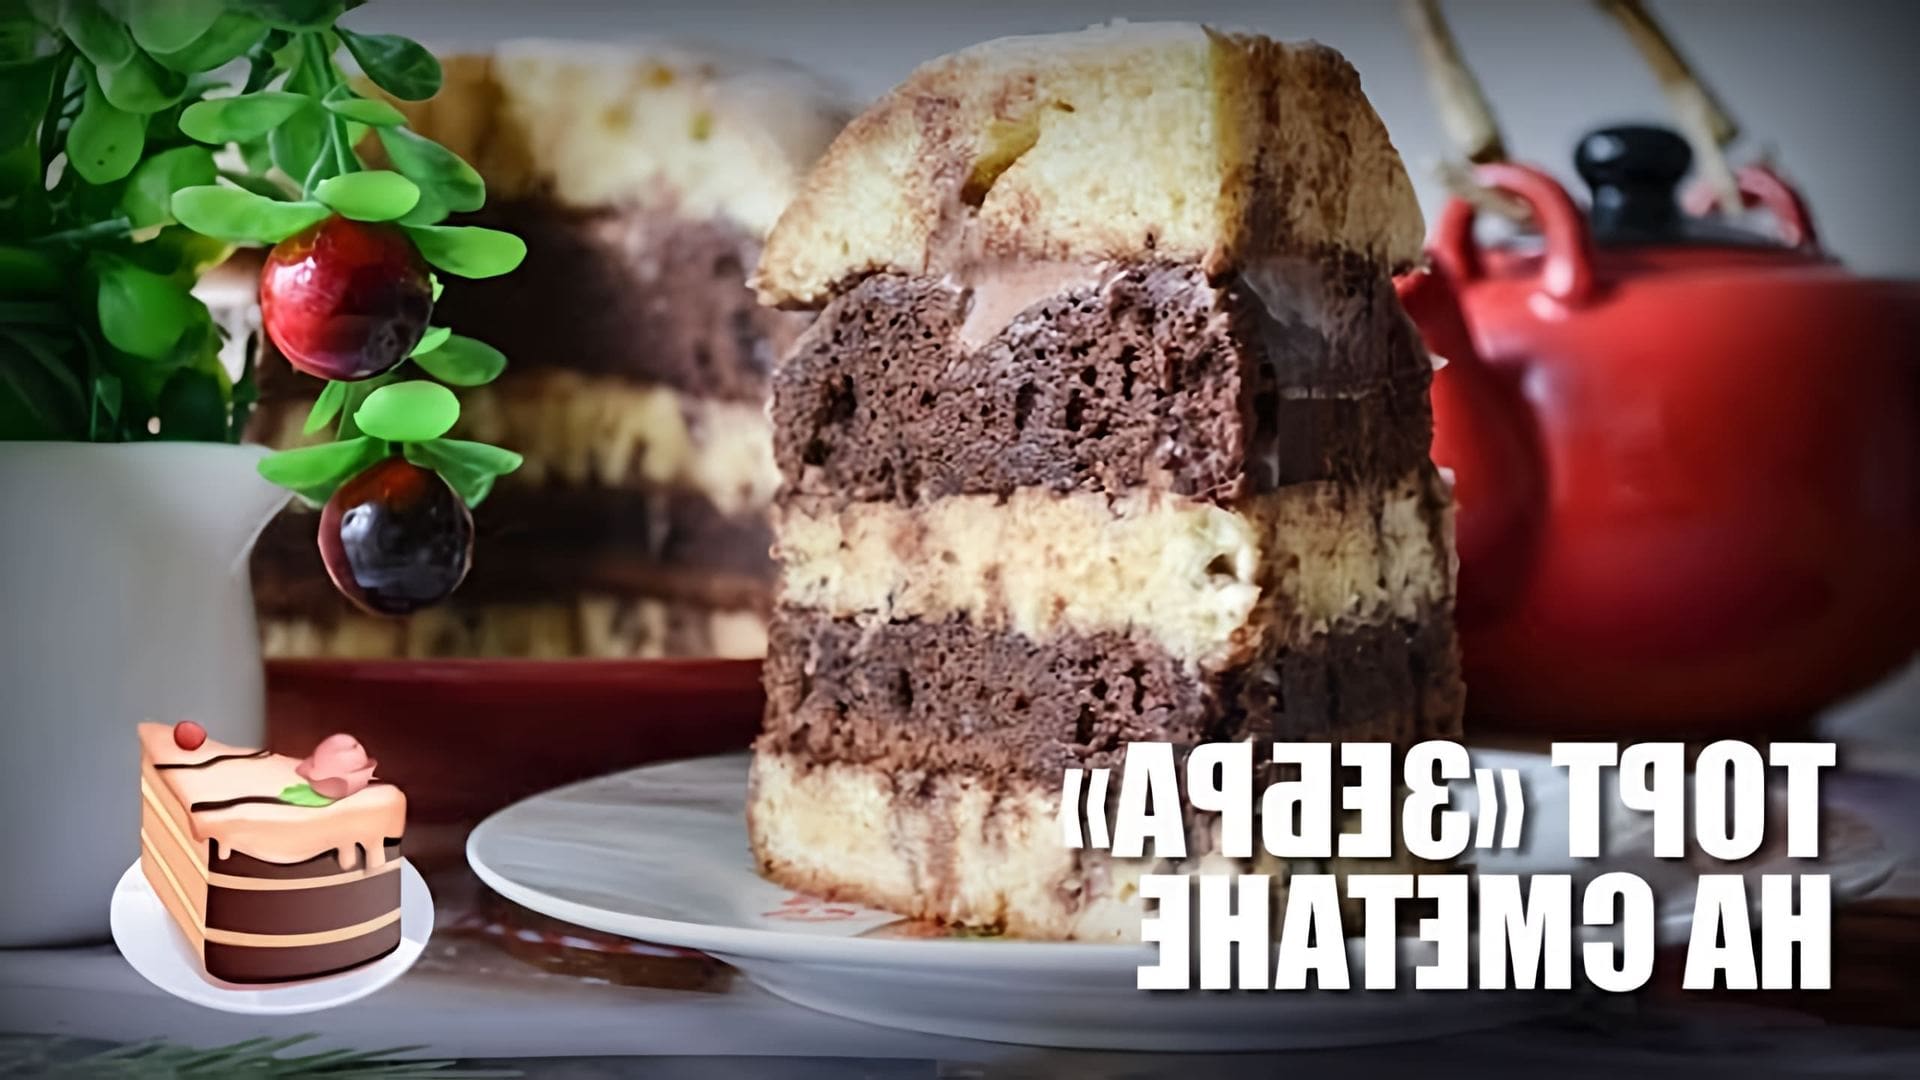 В этом видео представлен рецепт приготовления торта "Зебра" на сметане